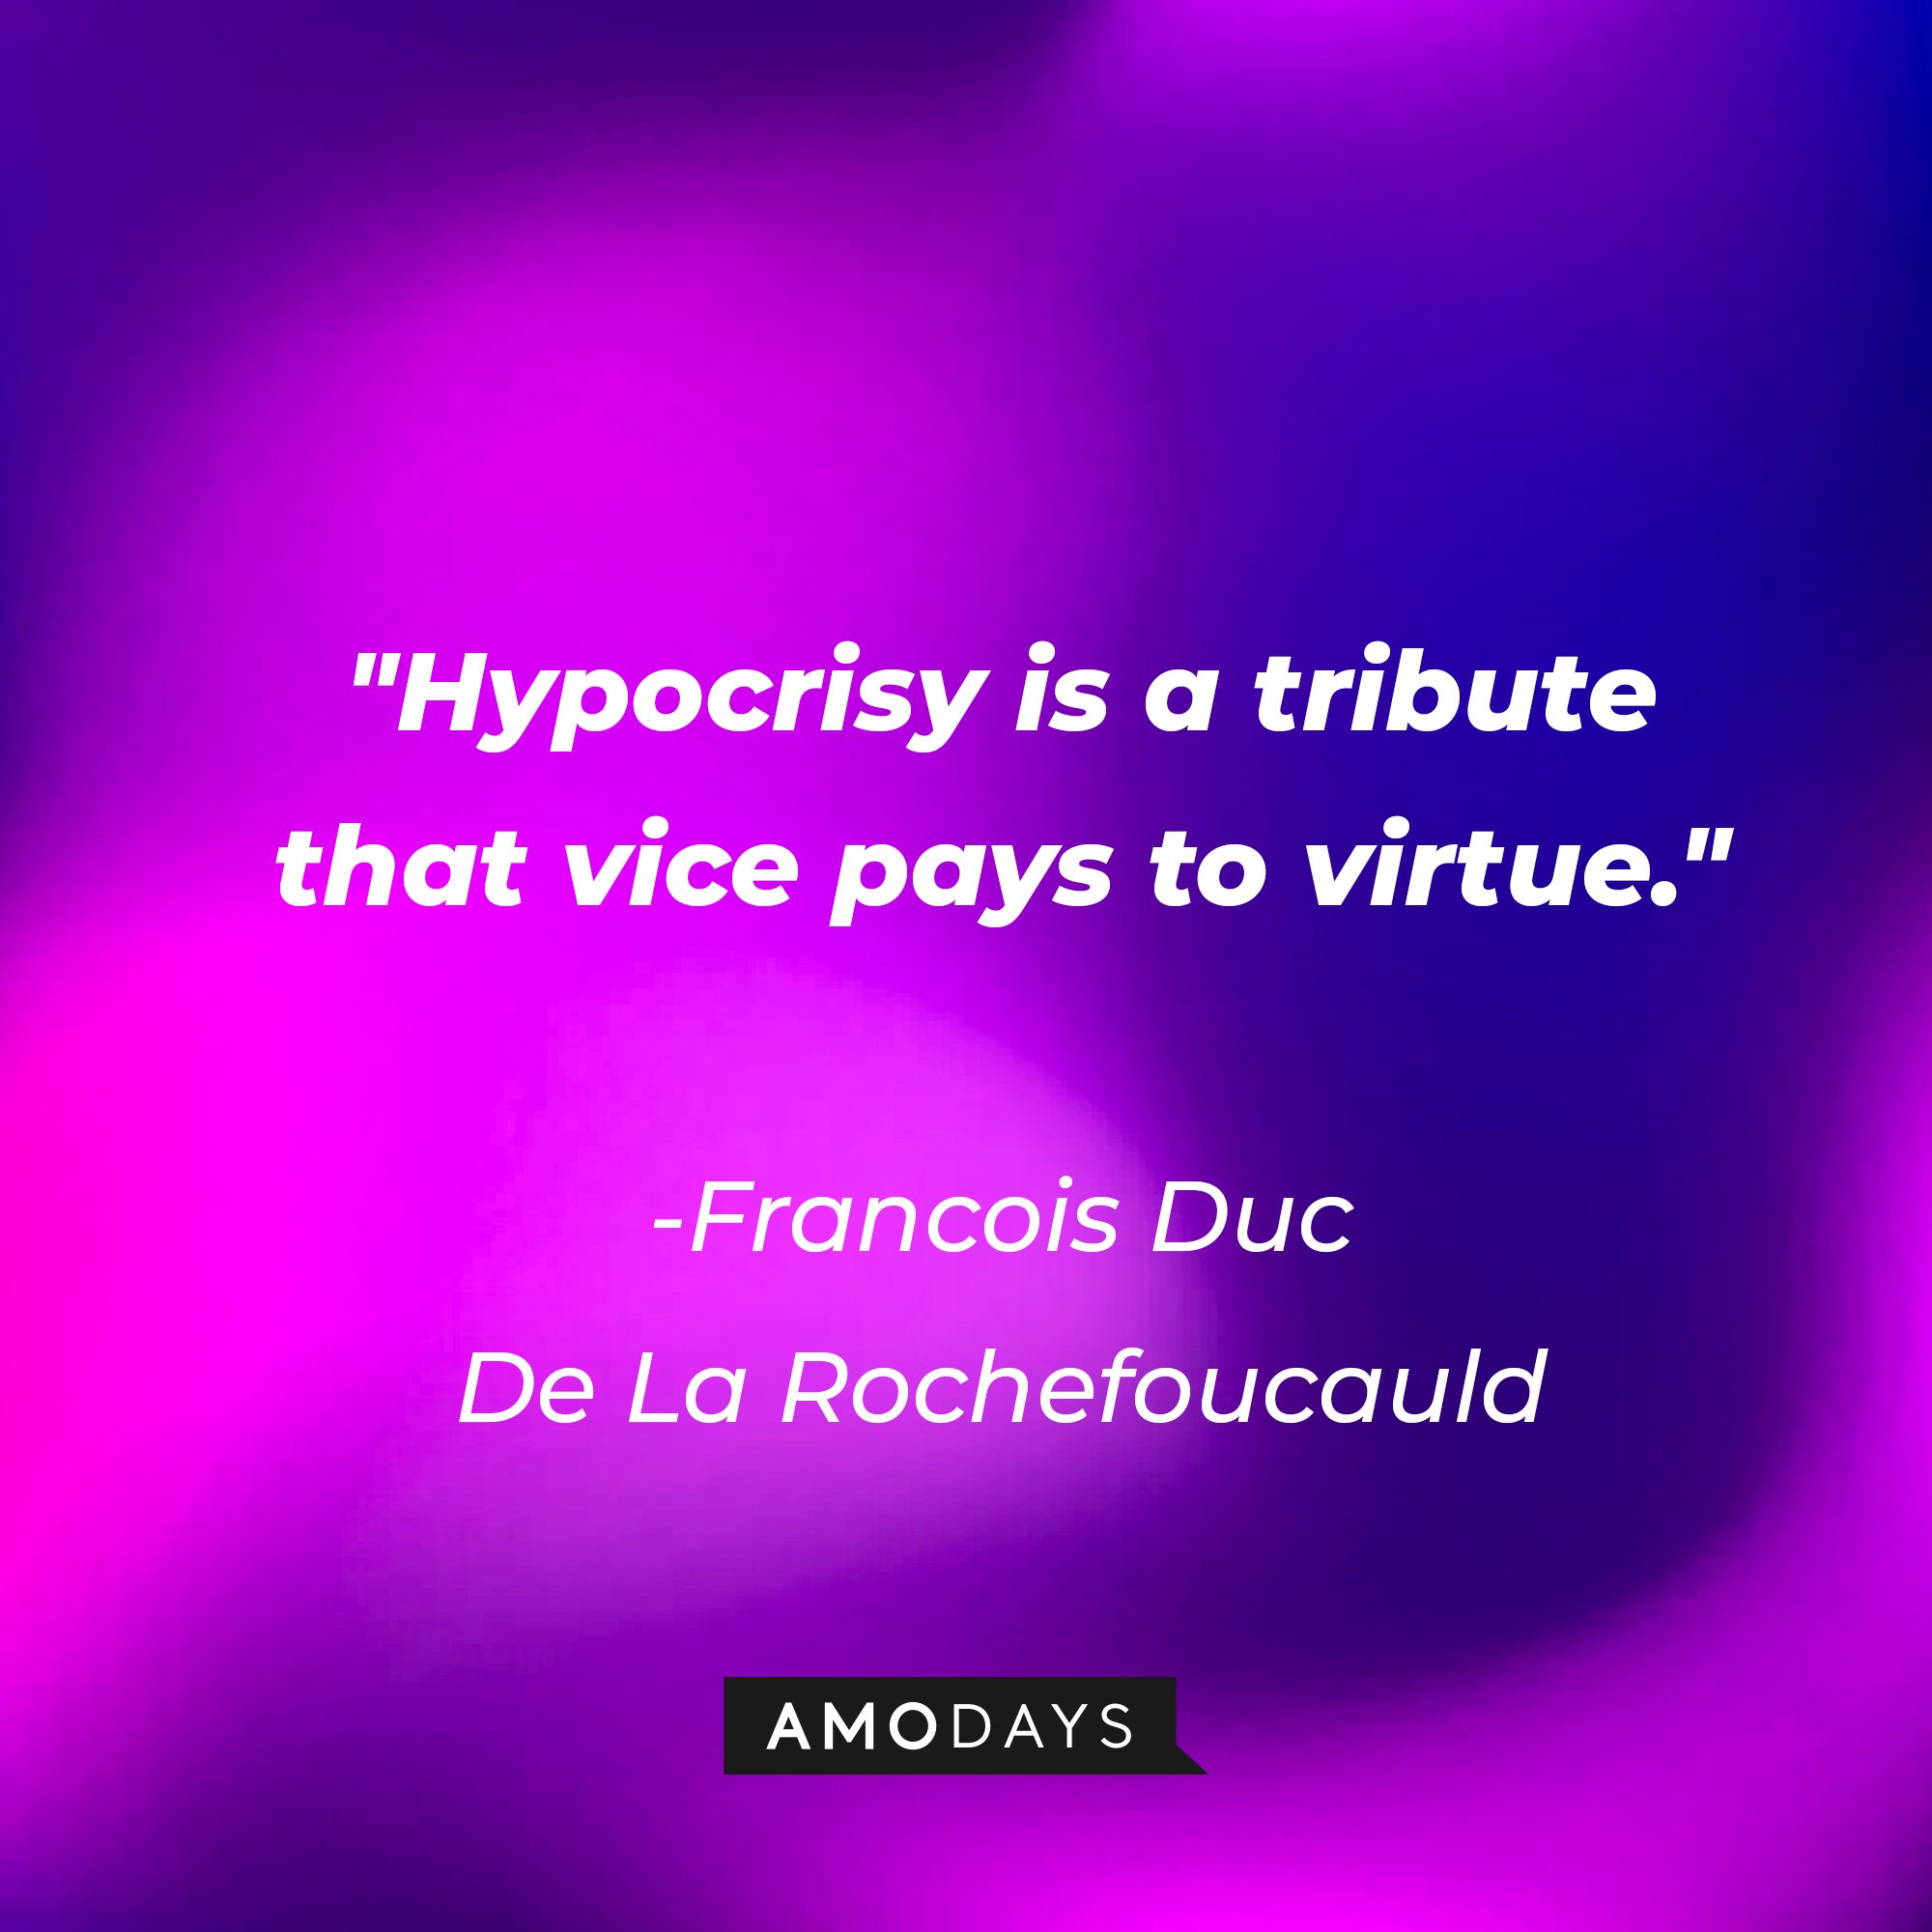 Francois Duc De La Rochefoucauld's quote:\\\\\\\\\\\\\\\\u00a0"Hypocrisy is a tribute that vice pays to virtue."\\\\\\\\\\\\\\\\u00a0| Image: AmoDays